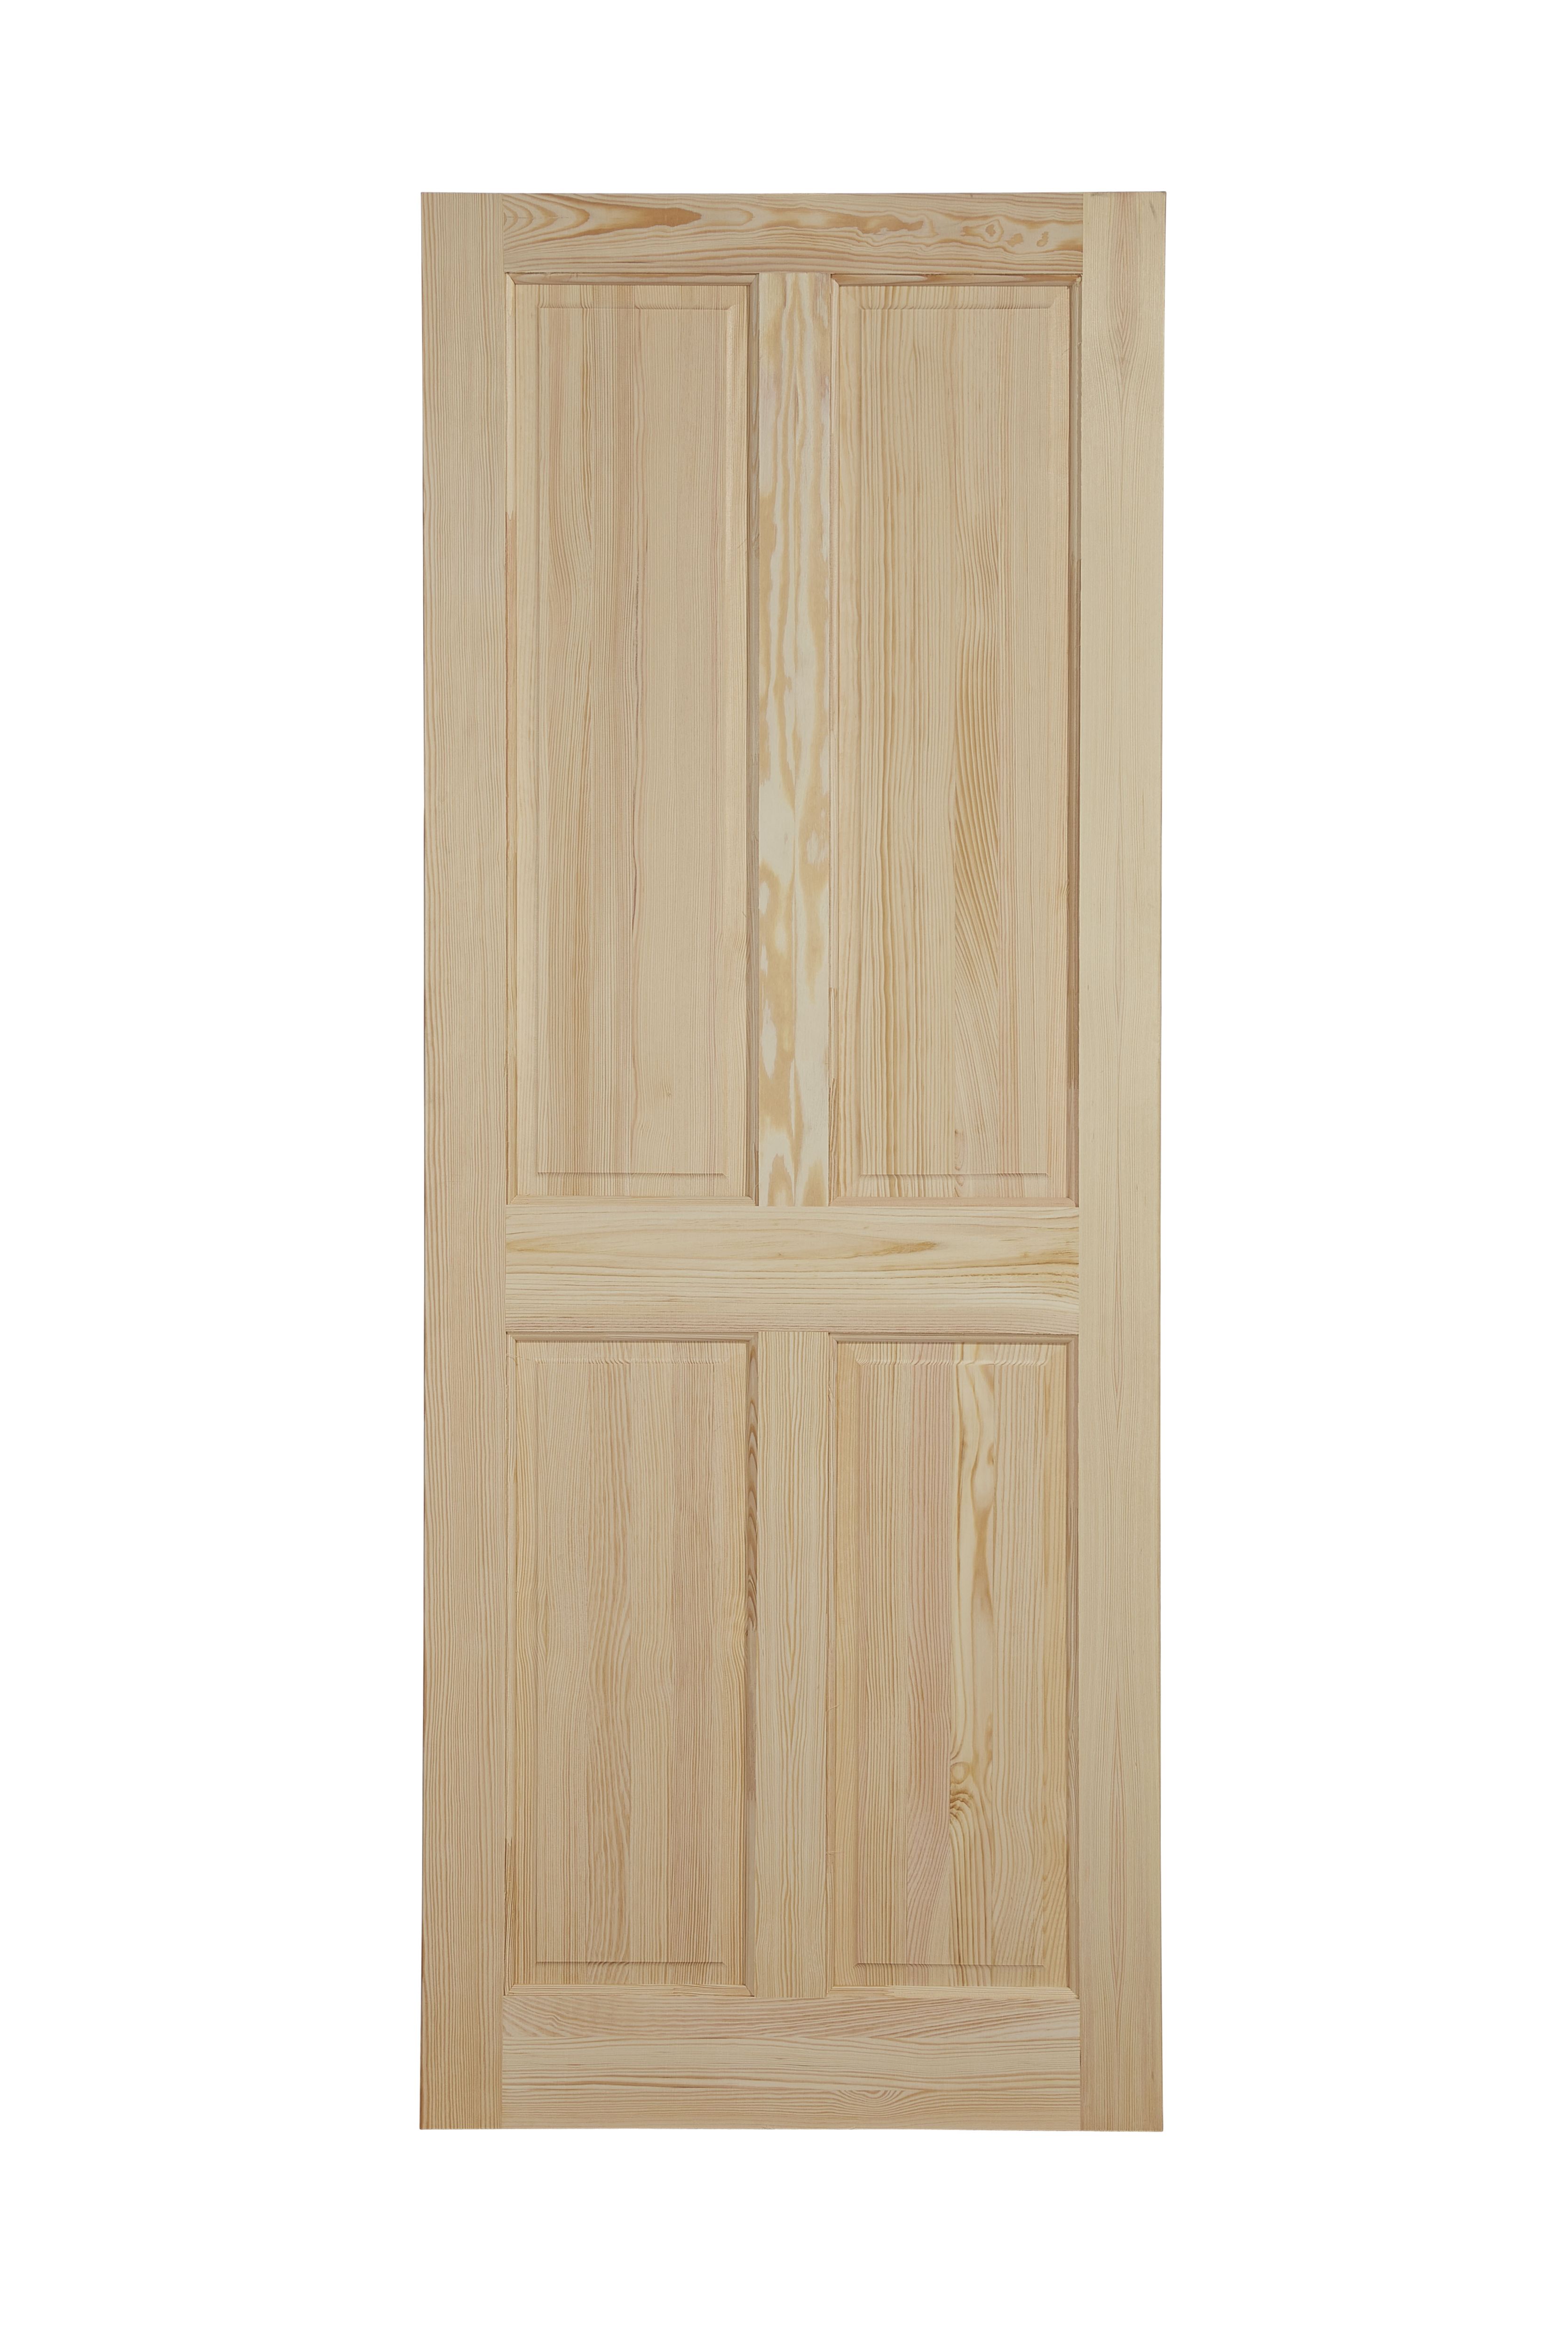 Geom 4 panel Unglazed Victorian Pine veneer Internal Clear pine Door, (H)2040mm (W)726mm (T)40mm